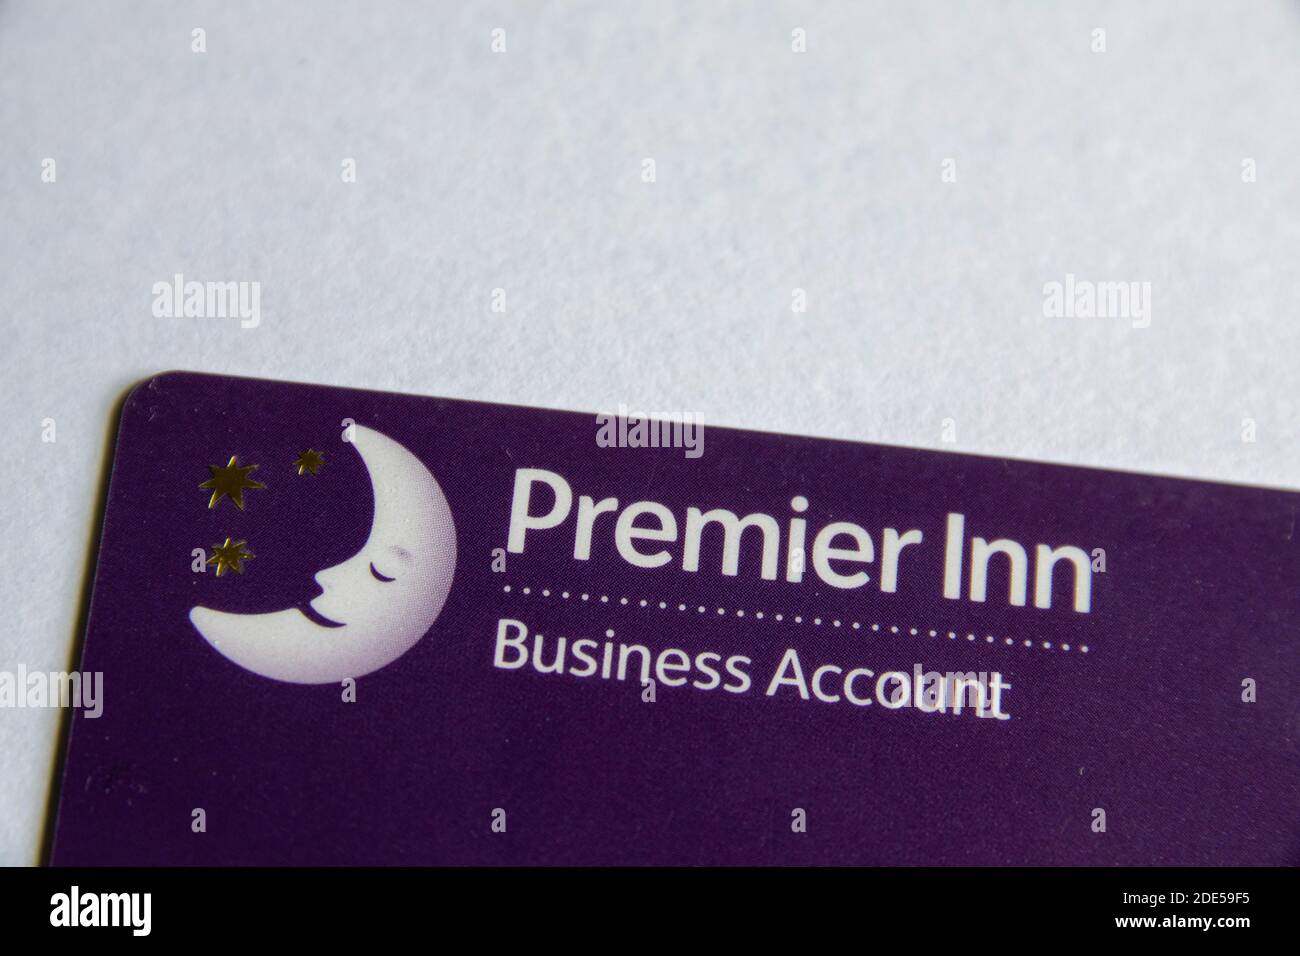 Durham, Großbritannien - 28. Mai 2020: Premier Inn Business Account Card. Mit der Karte können Personen, die geschäftlich unterwegs sind, ein Zimmer und Mahlzeiten ihrem Unternehmen in Rechnung stellen. Stockfoto